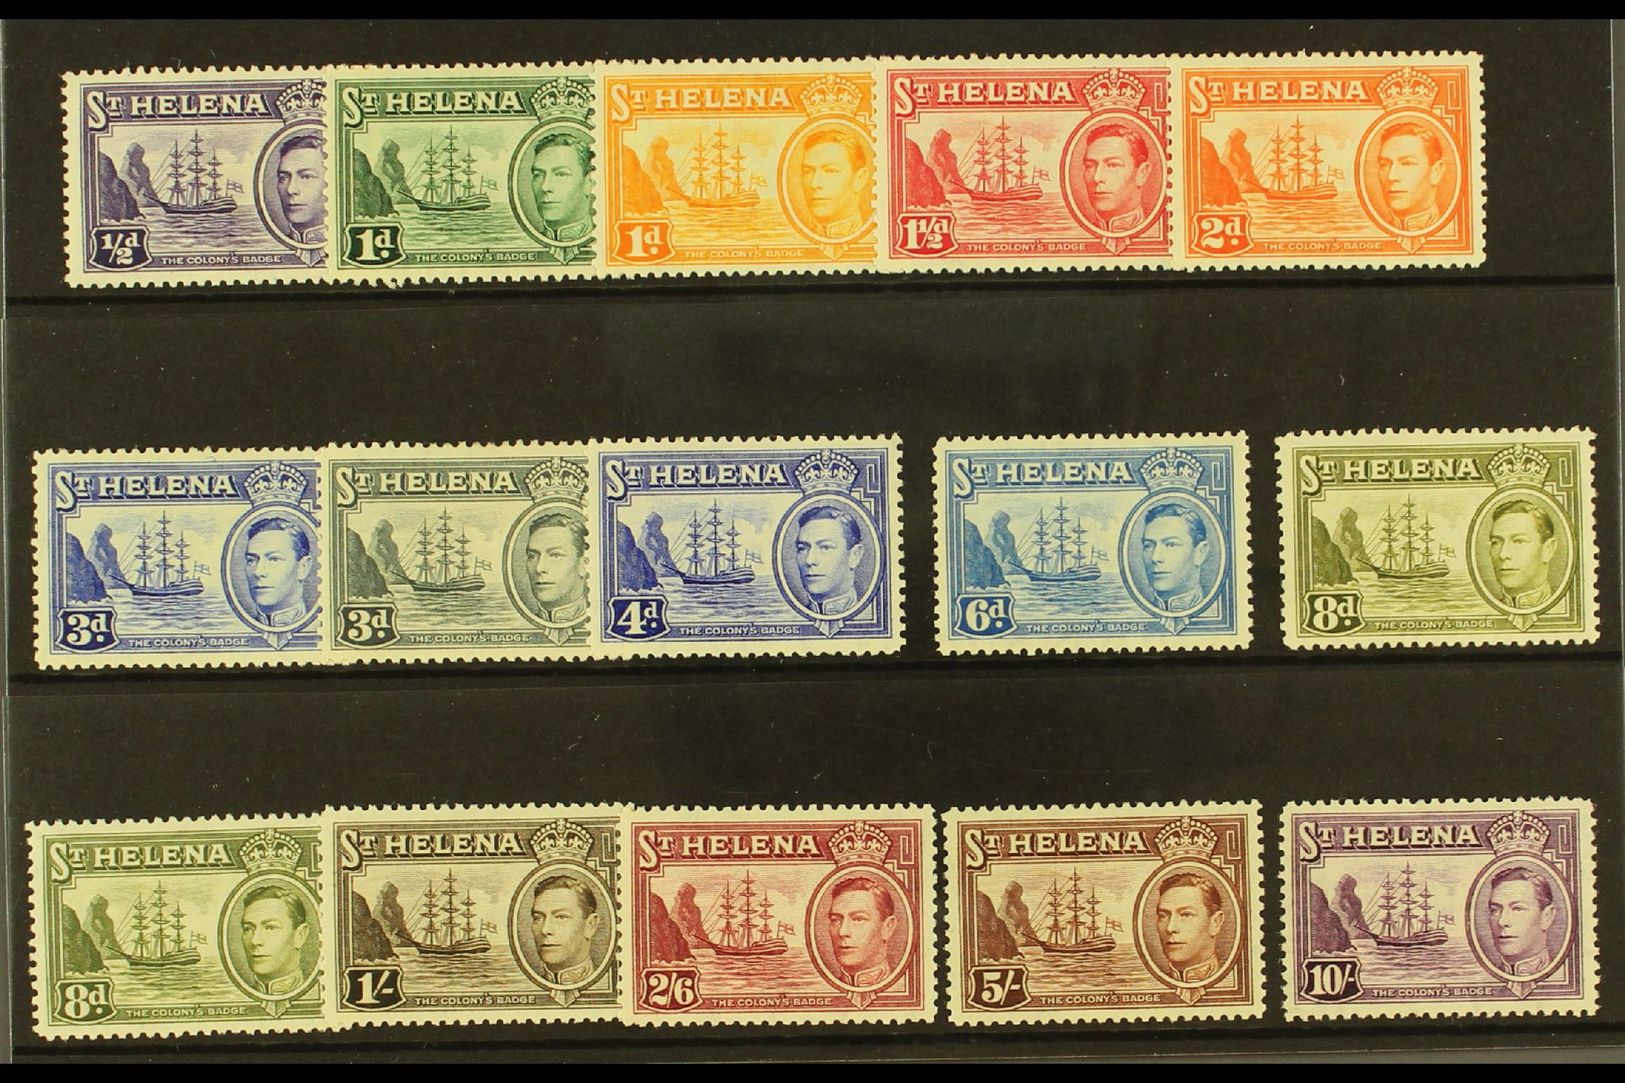 1938-44 Pictorial Definitive Set Plus 8d Listed Shade, SG 131/40, Fine Mint (15 Stamps) For More Images, Please Visit Ht - Sainte-Hélène